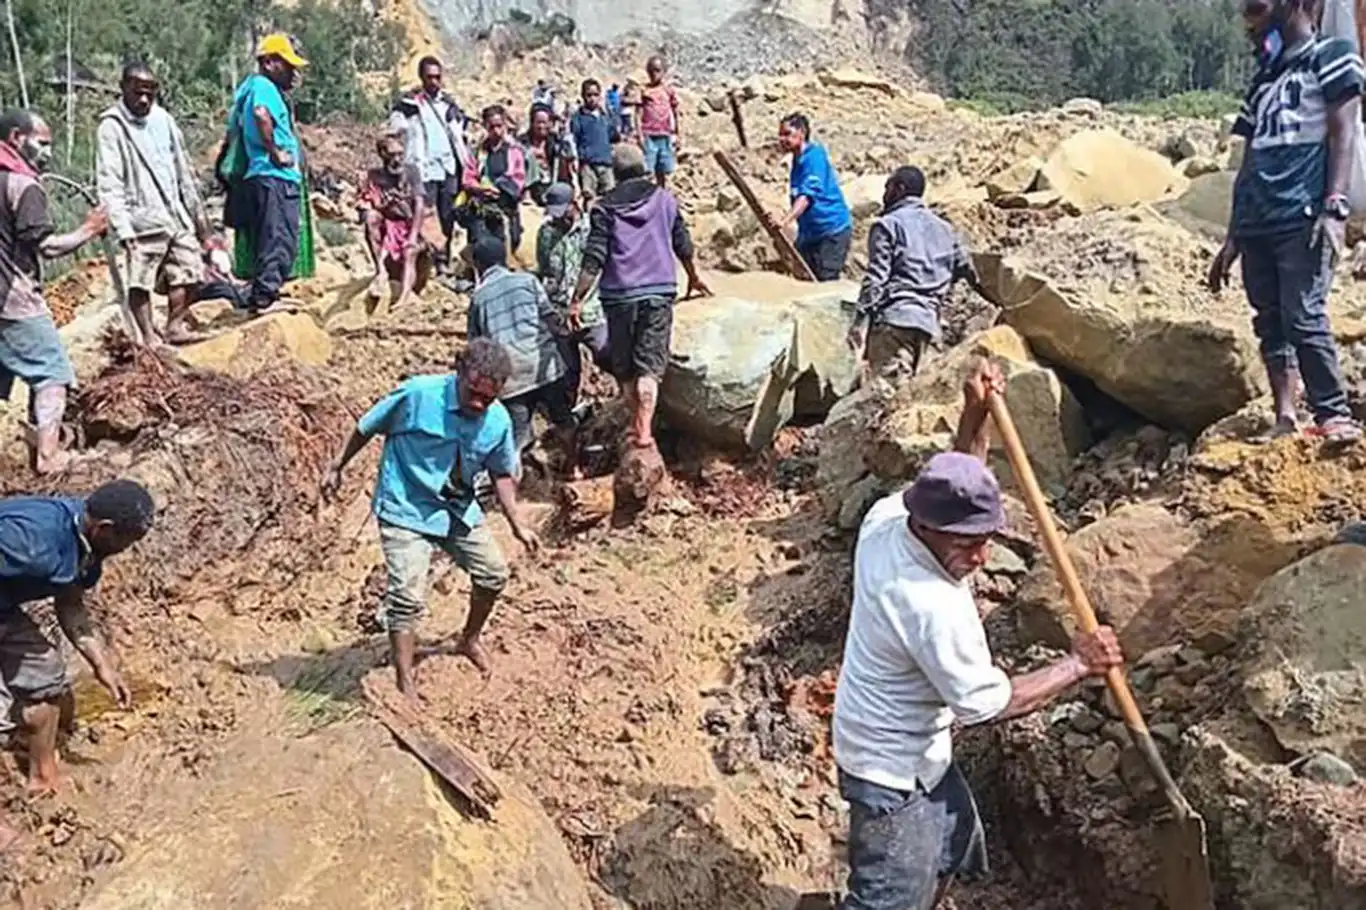 Papua Yeni Gine’de toprak altında kalanları kurtarma çalışmaları devam ediyor